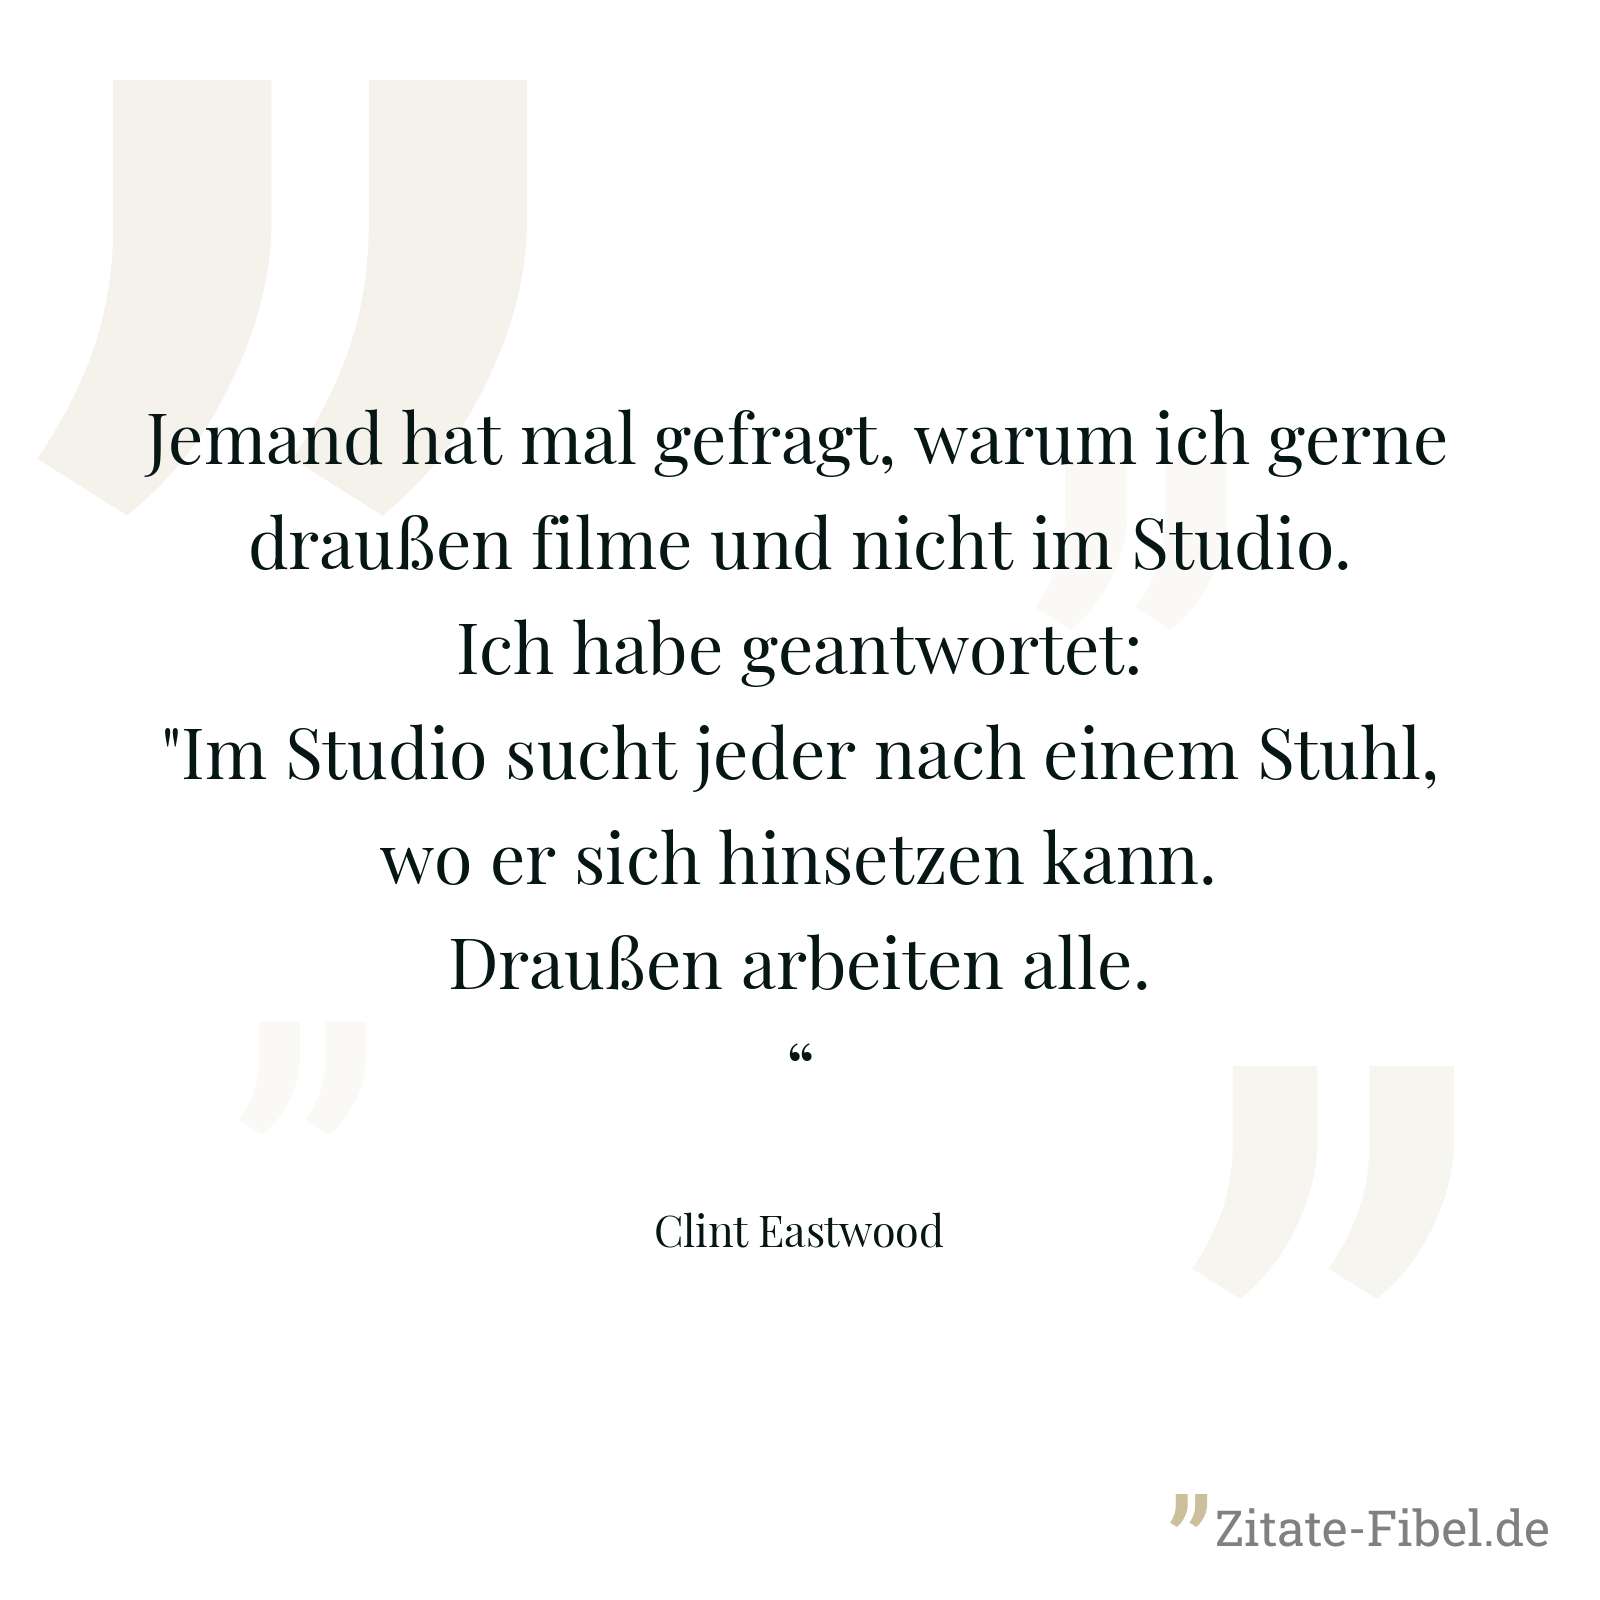 Jemand hat mal gefragt, warum ich gerne draußen filme und nicht im Studio. Ich habe geantwortet: "Im Studio sucht jeder nach einem Stuhl, wo er sich hinsetzen kann. Draußen arbeiten alle.“ - Clint Eastwood